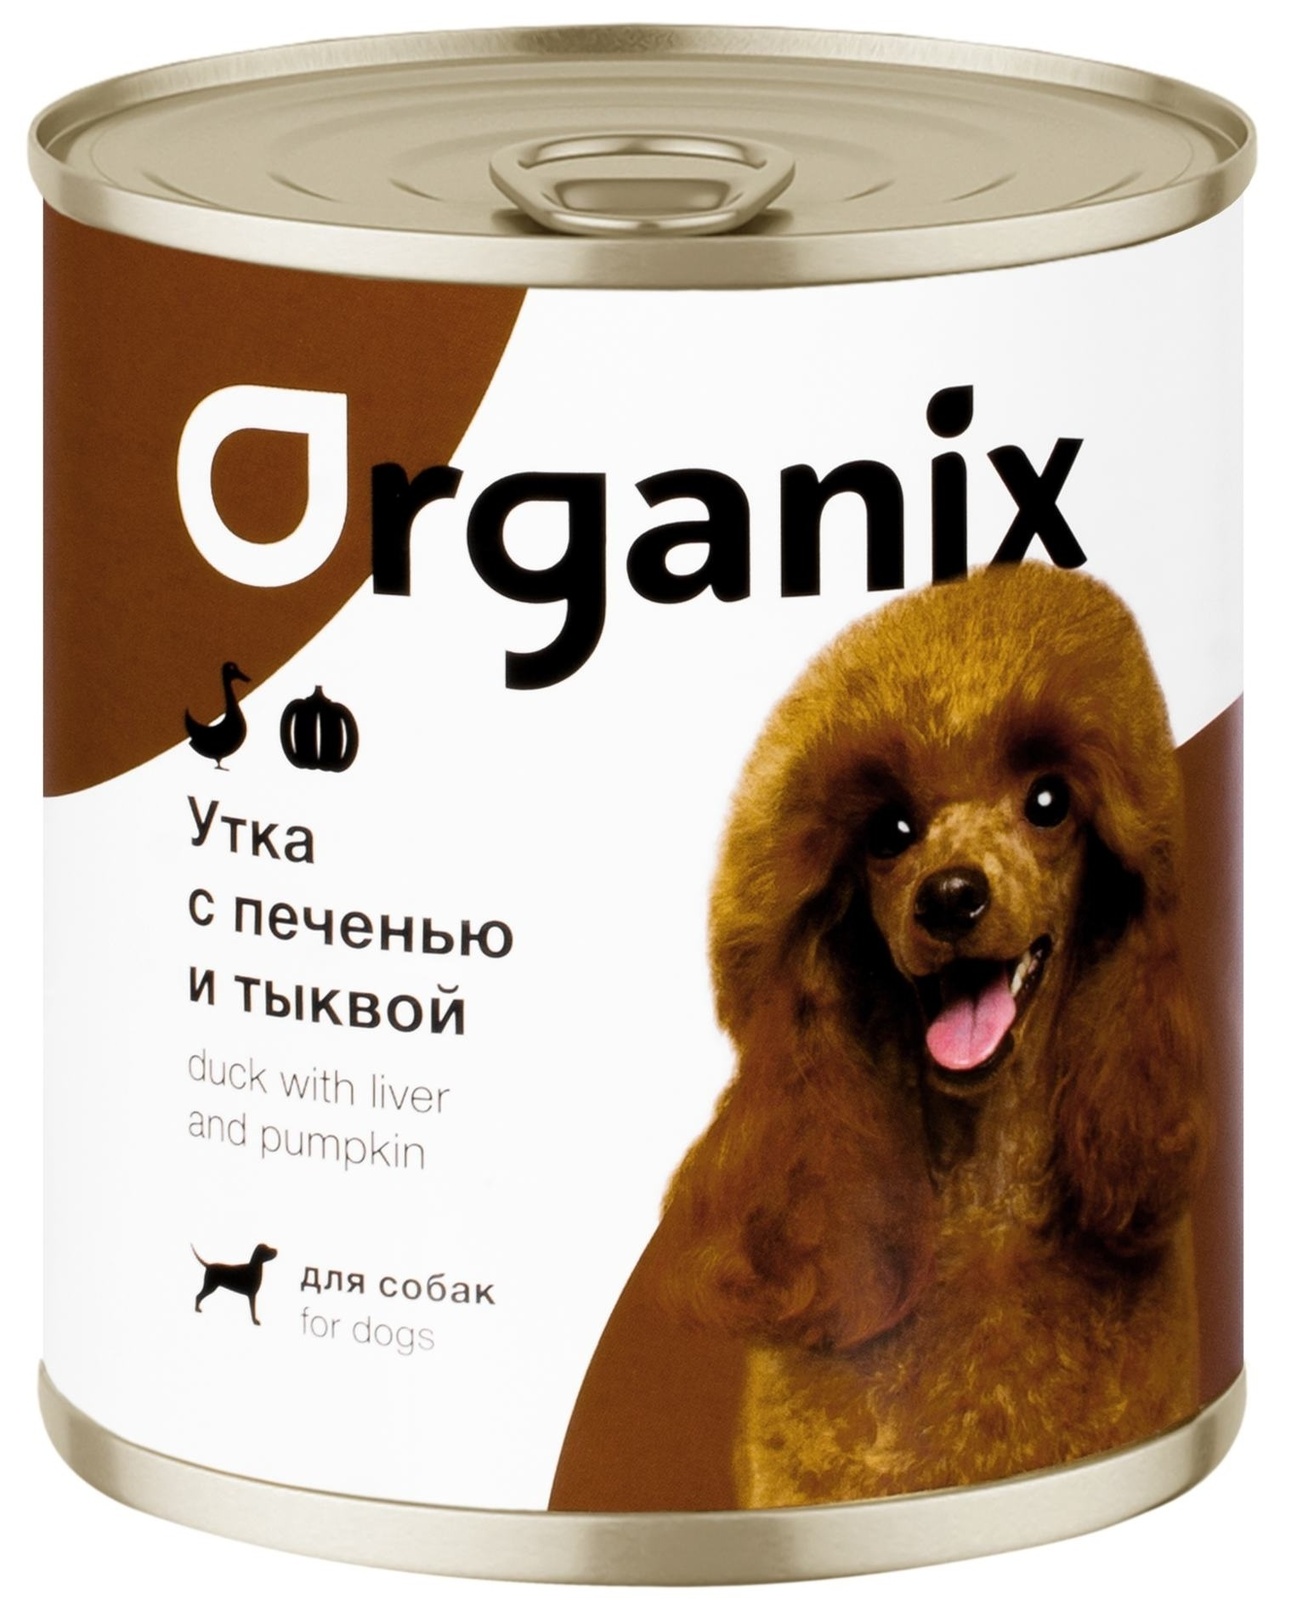 Organix консервы Organix консервы для собак Сочная утка с печенью и тыквой (100 г) фото